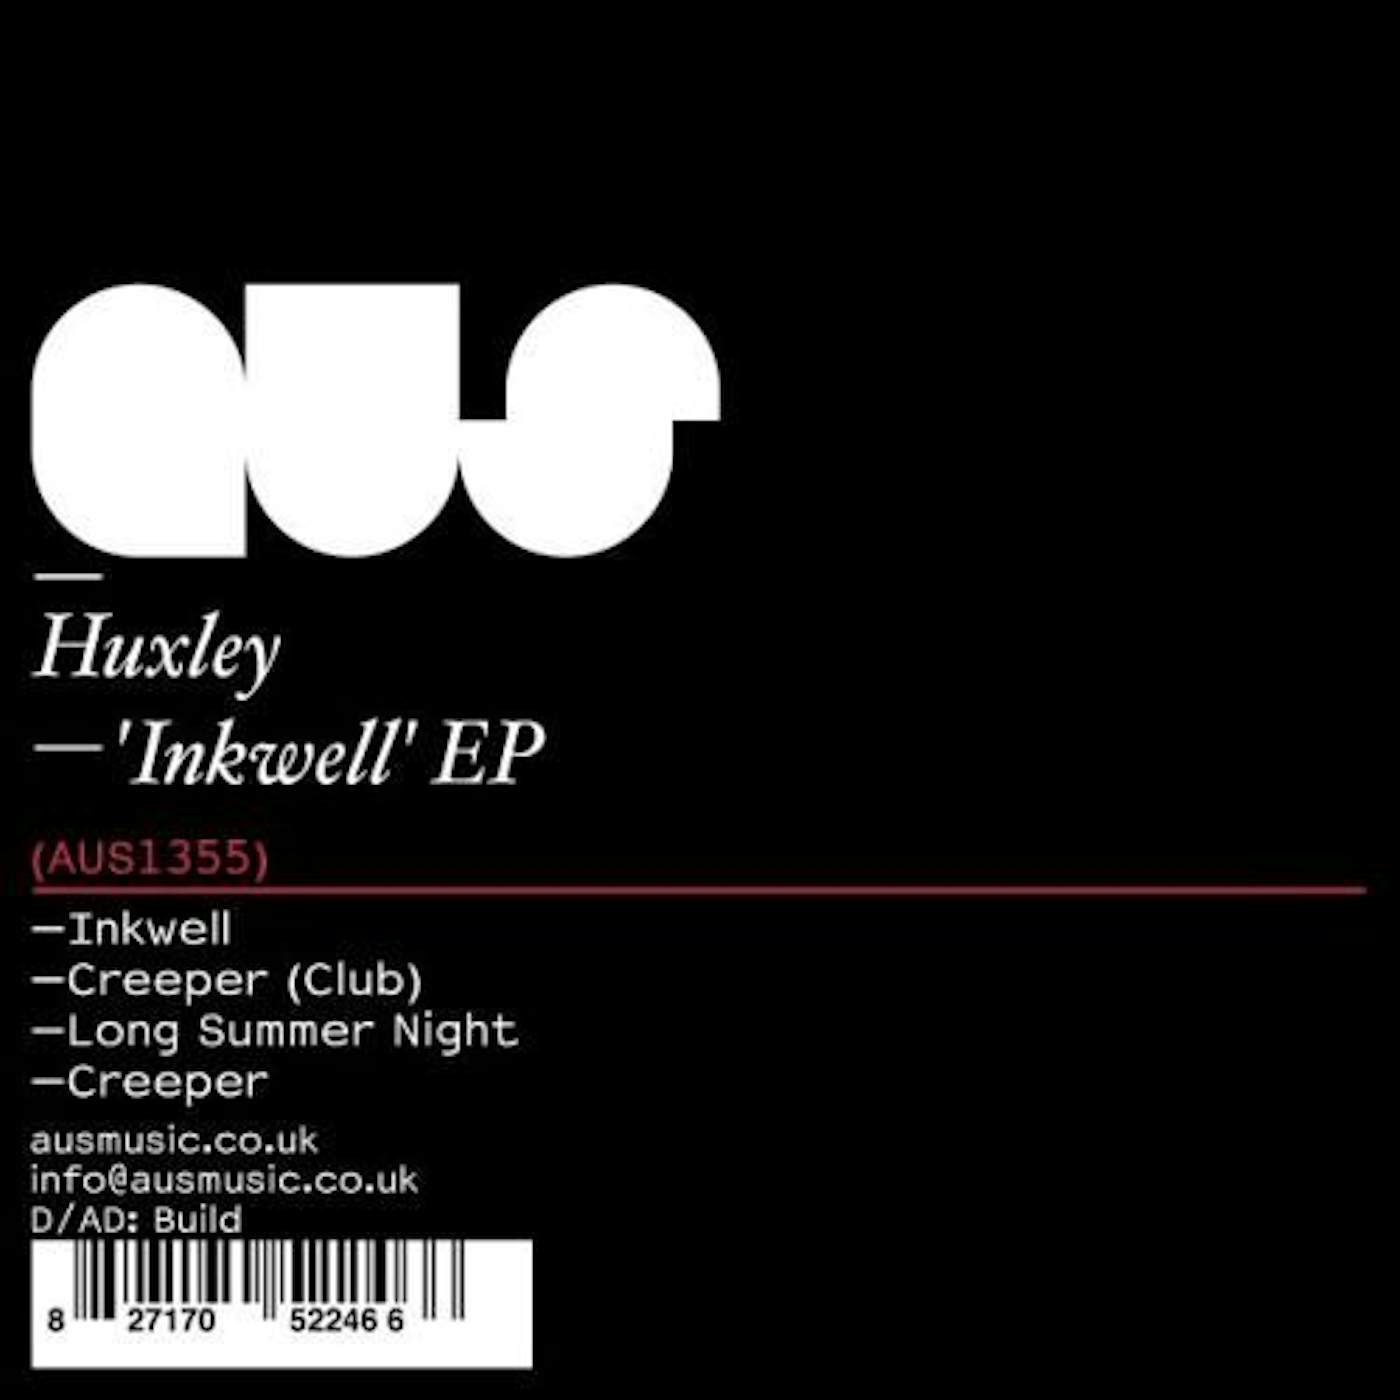 Huxley INKWELL Vinyl Record